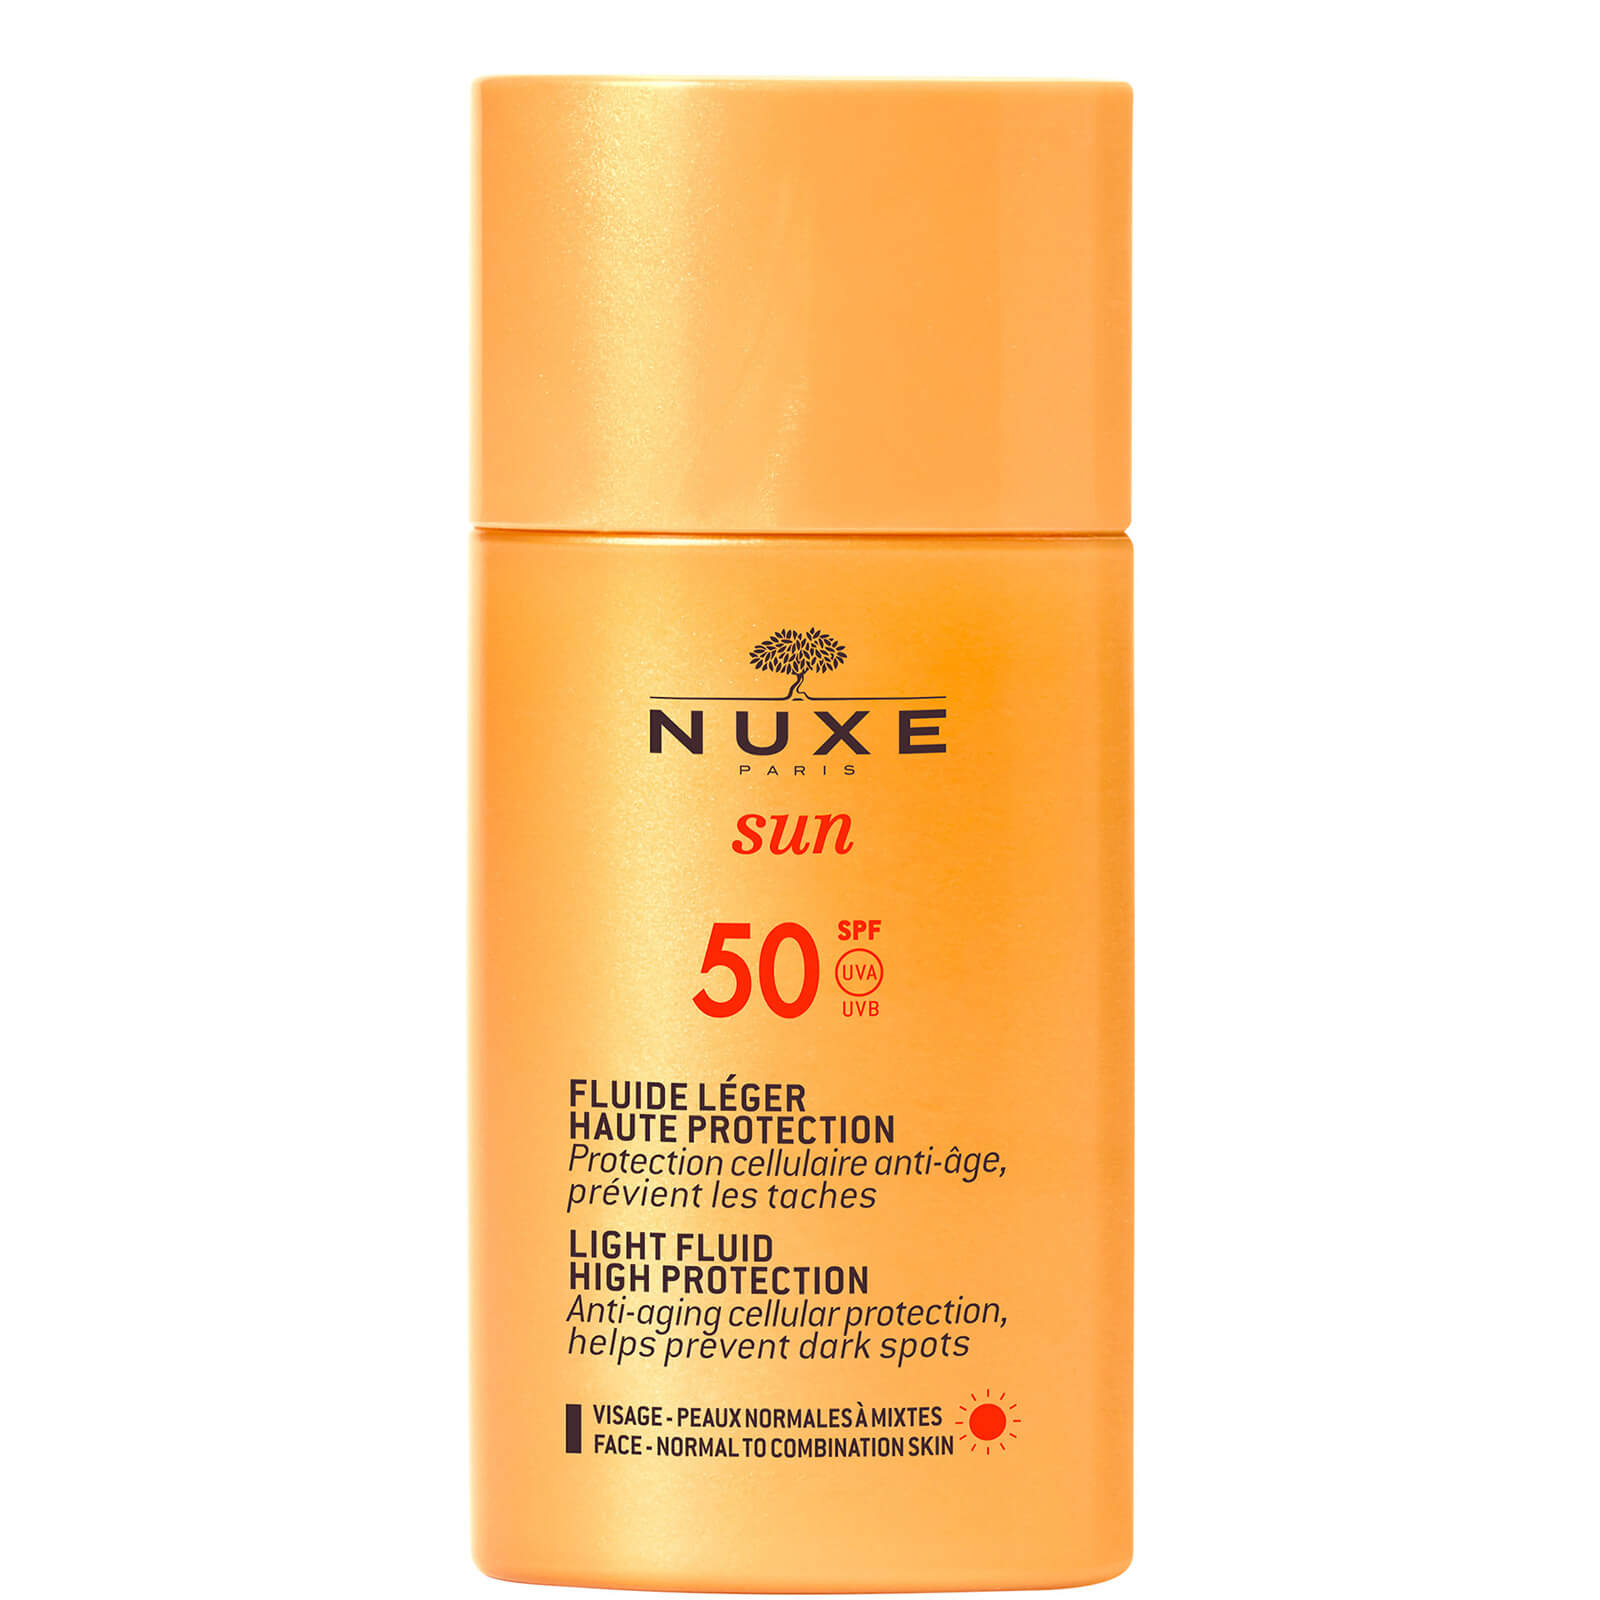 NUXE Sun SPF50 Light Face Fluid 50ml lookfantastic.com imagine